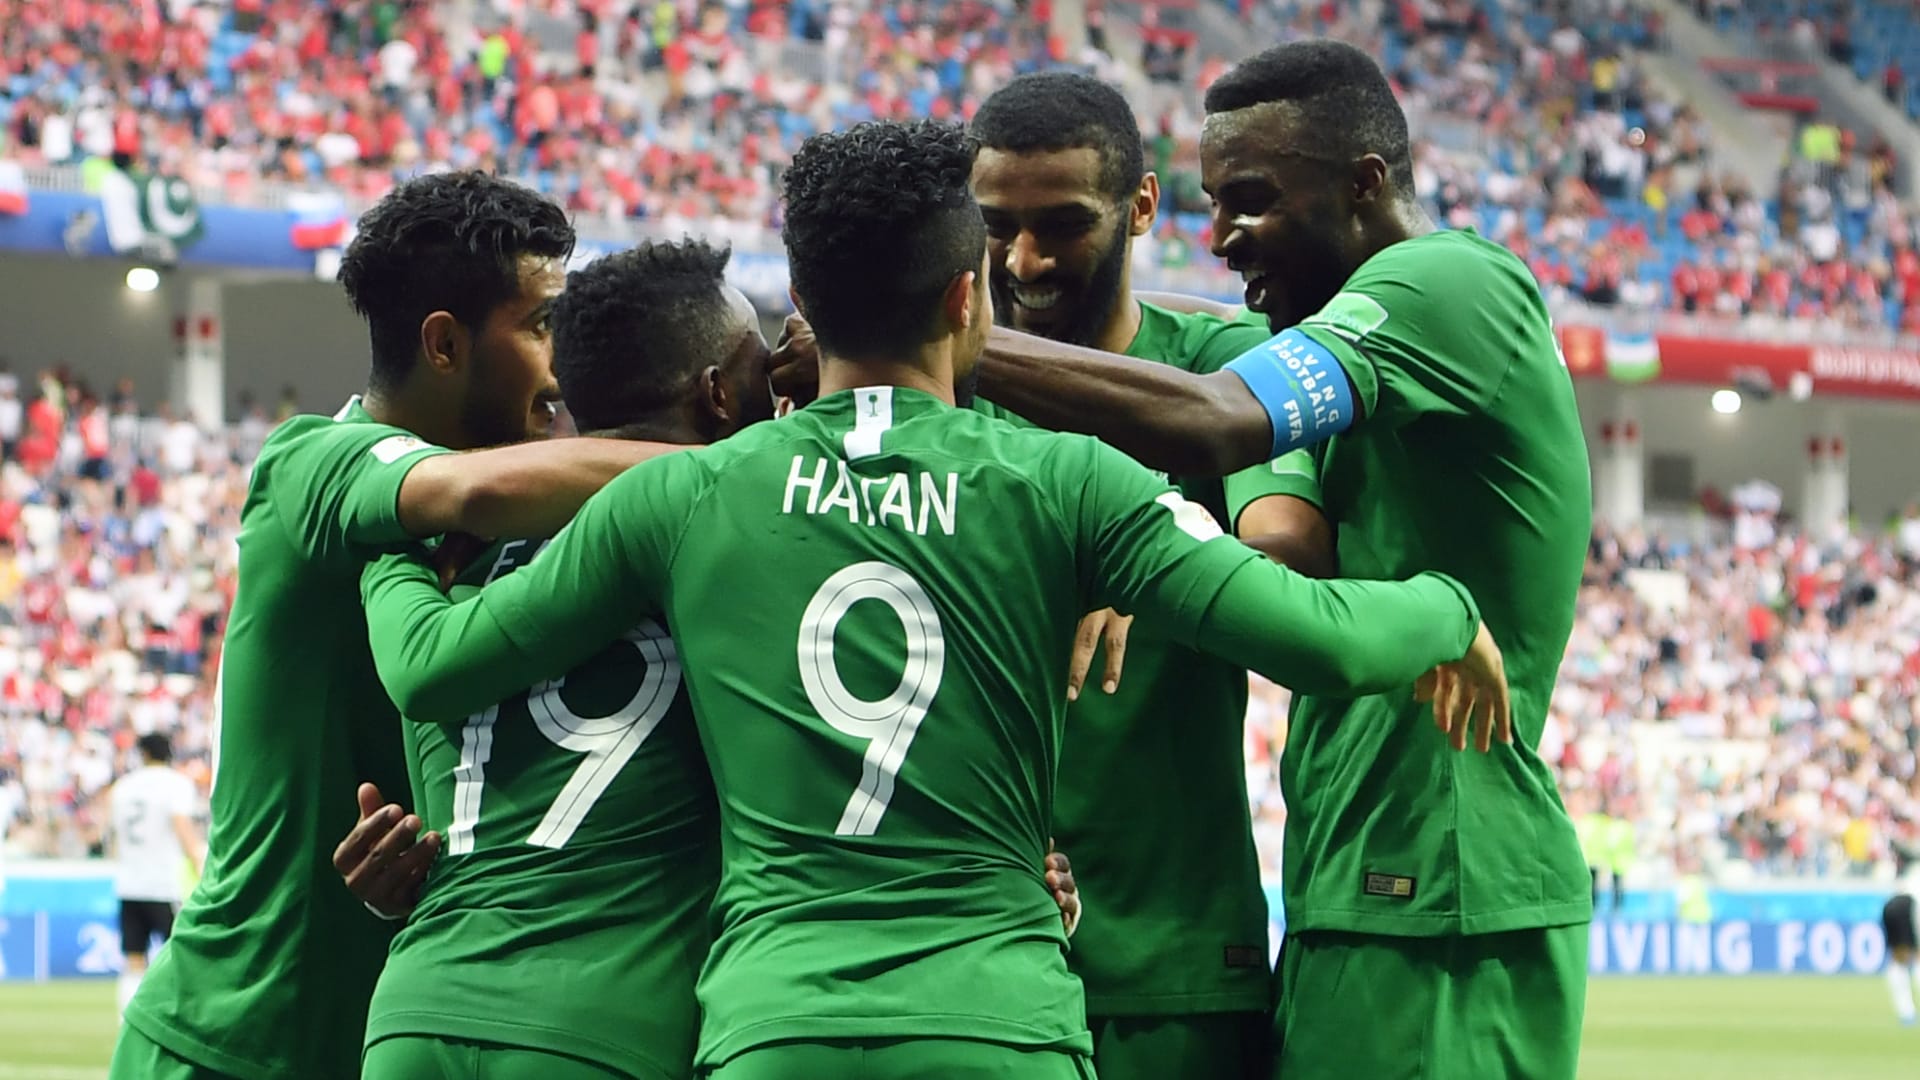 السعودية في كأس العالم.. أسباب تدعو للتفاؤل رغم الجزئية المقلقة